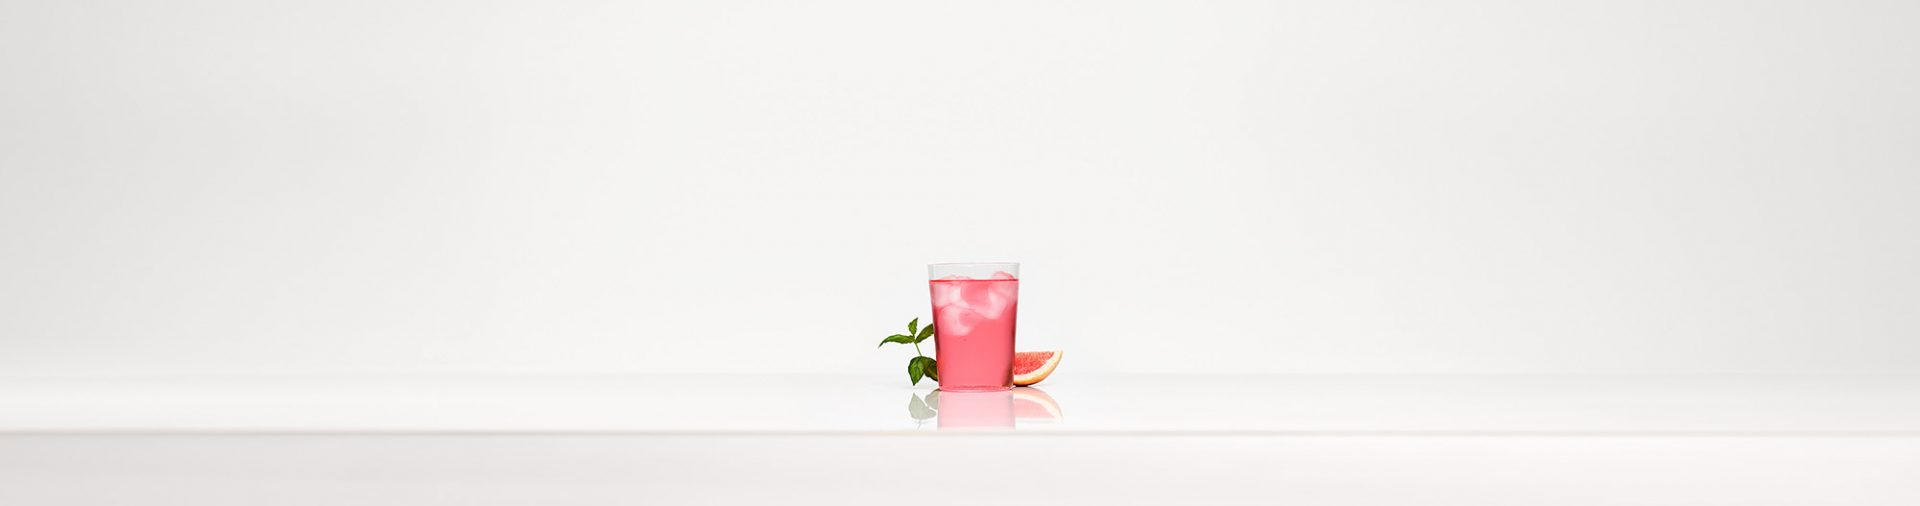 Un verre de boisson gazeuse rose sur un fond blanc.